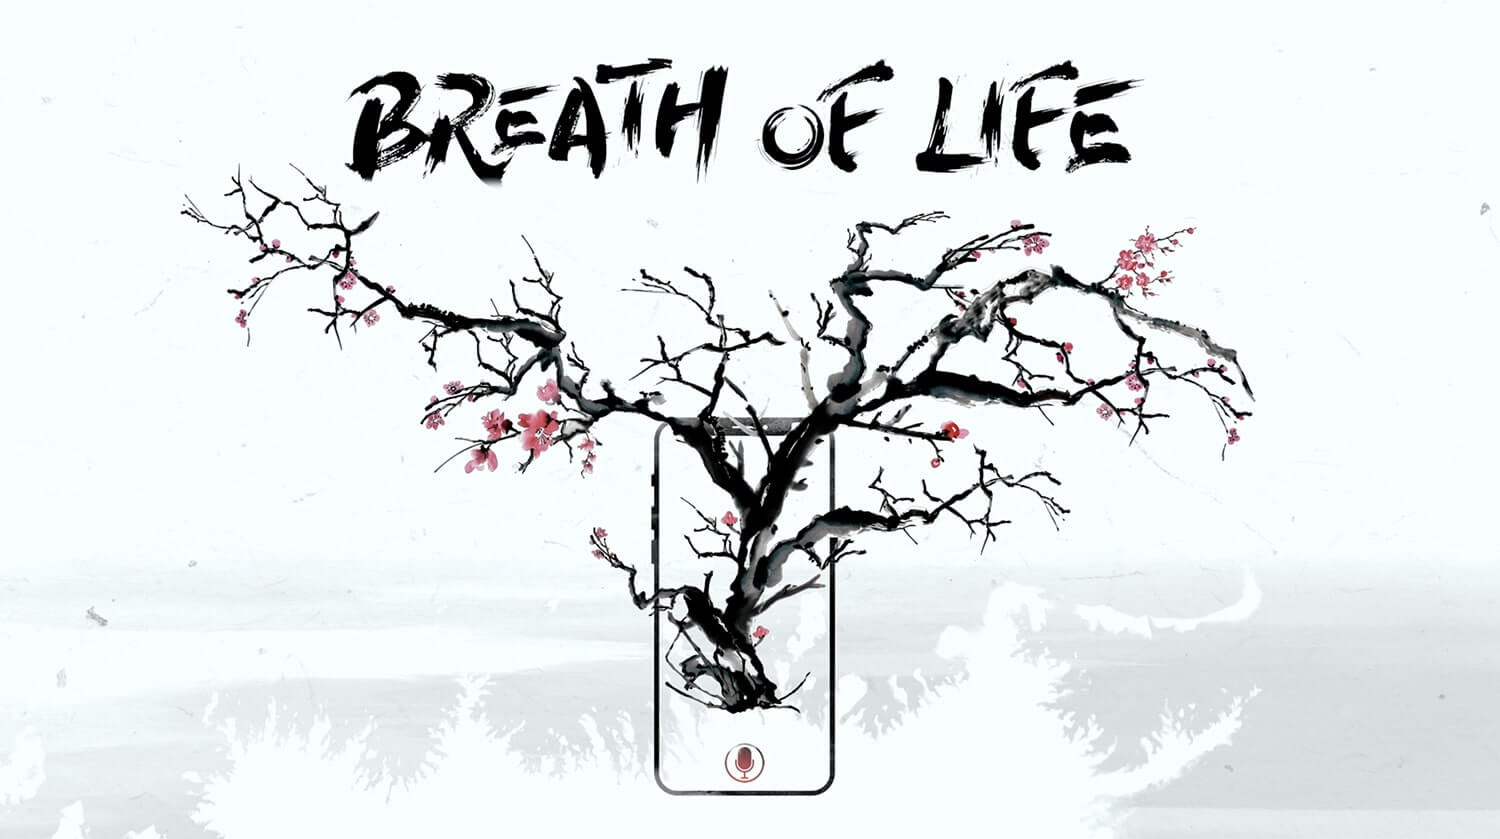 Breath of life by GlaxoSmithKline